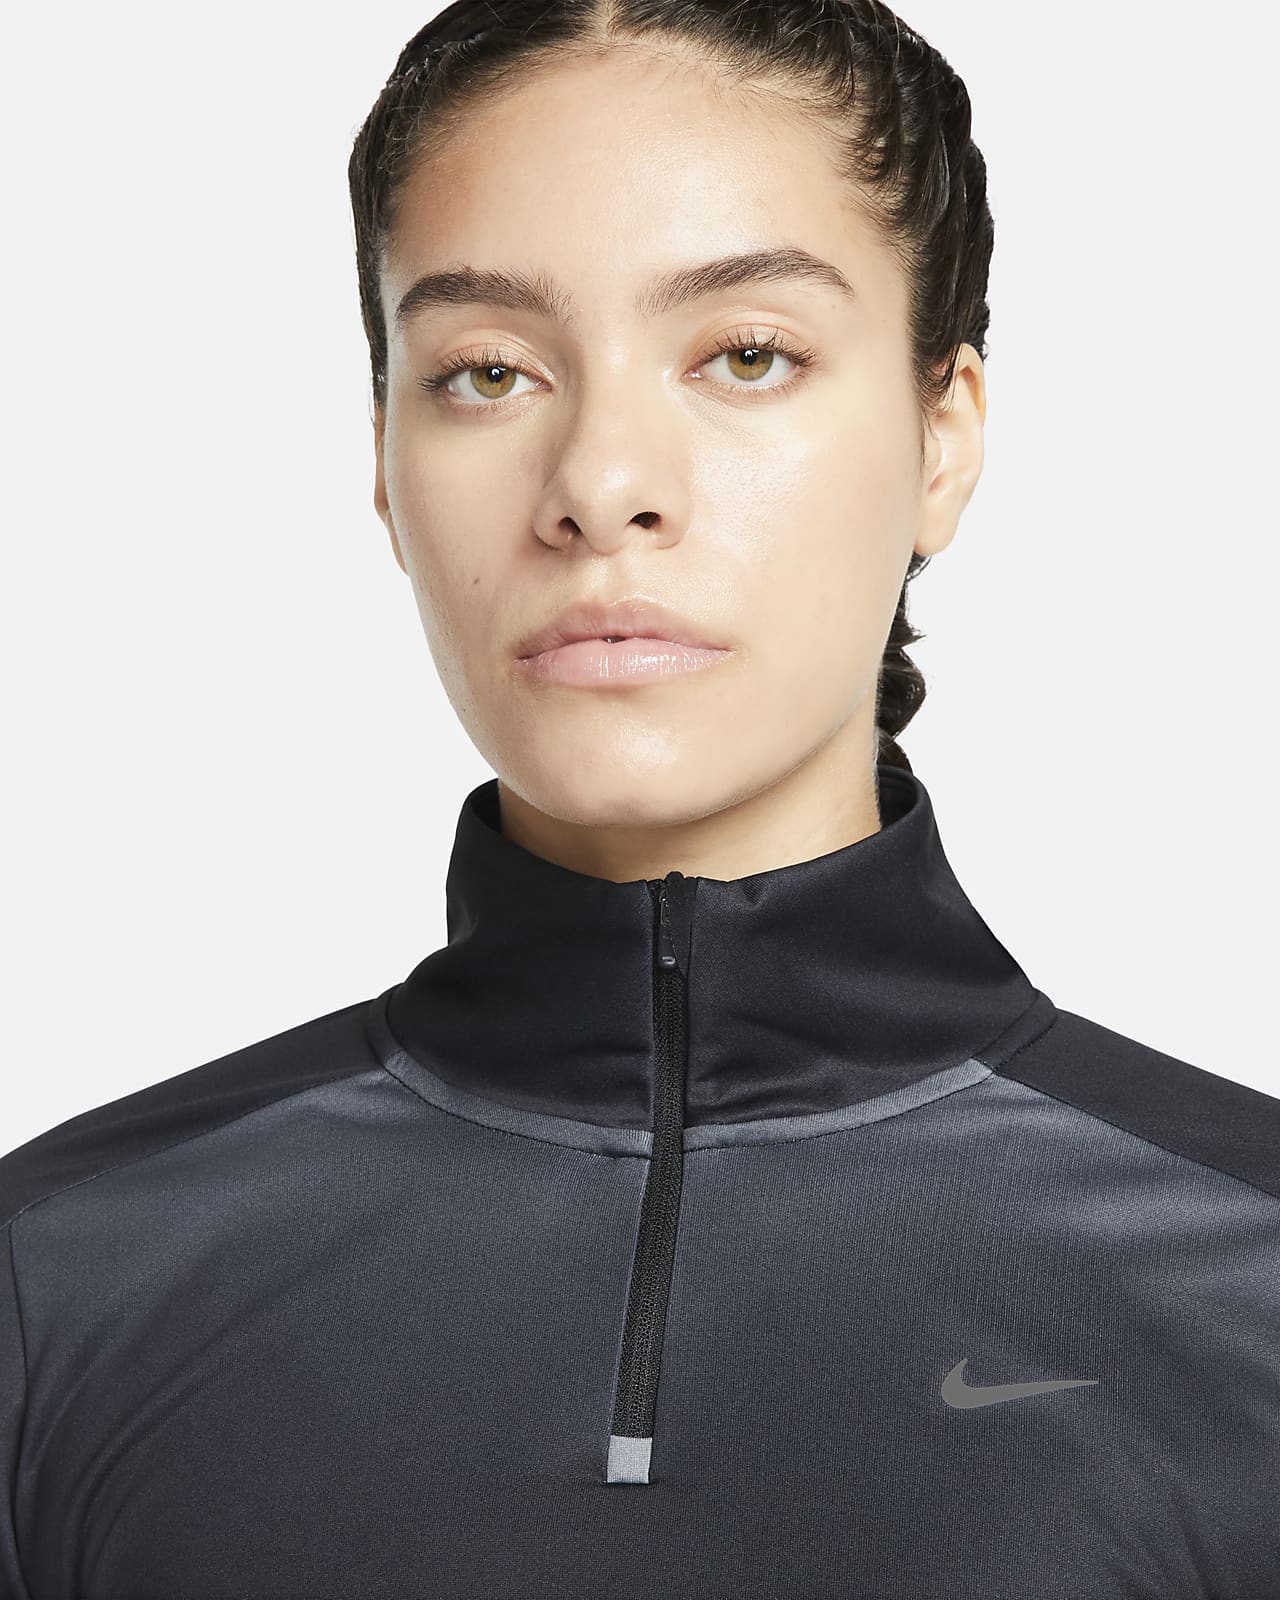 Nike Swoosh-løbetrøje med print 1/4 lynlås til kvinder. Nike DK